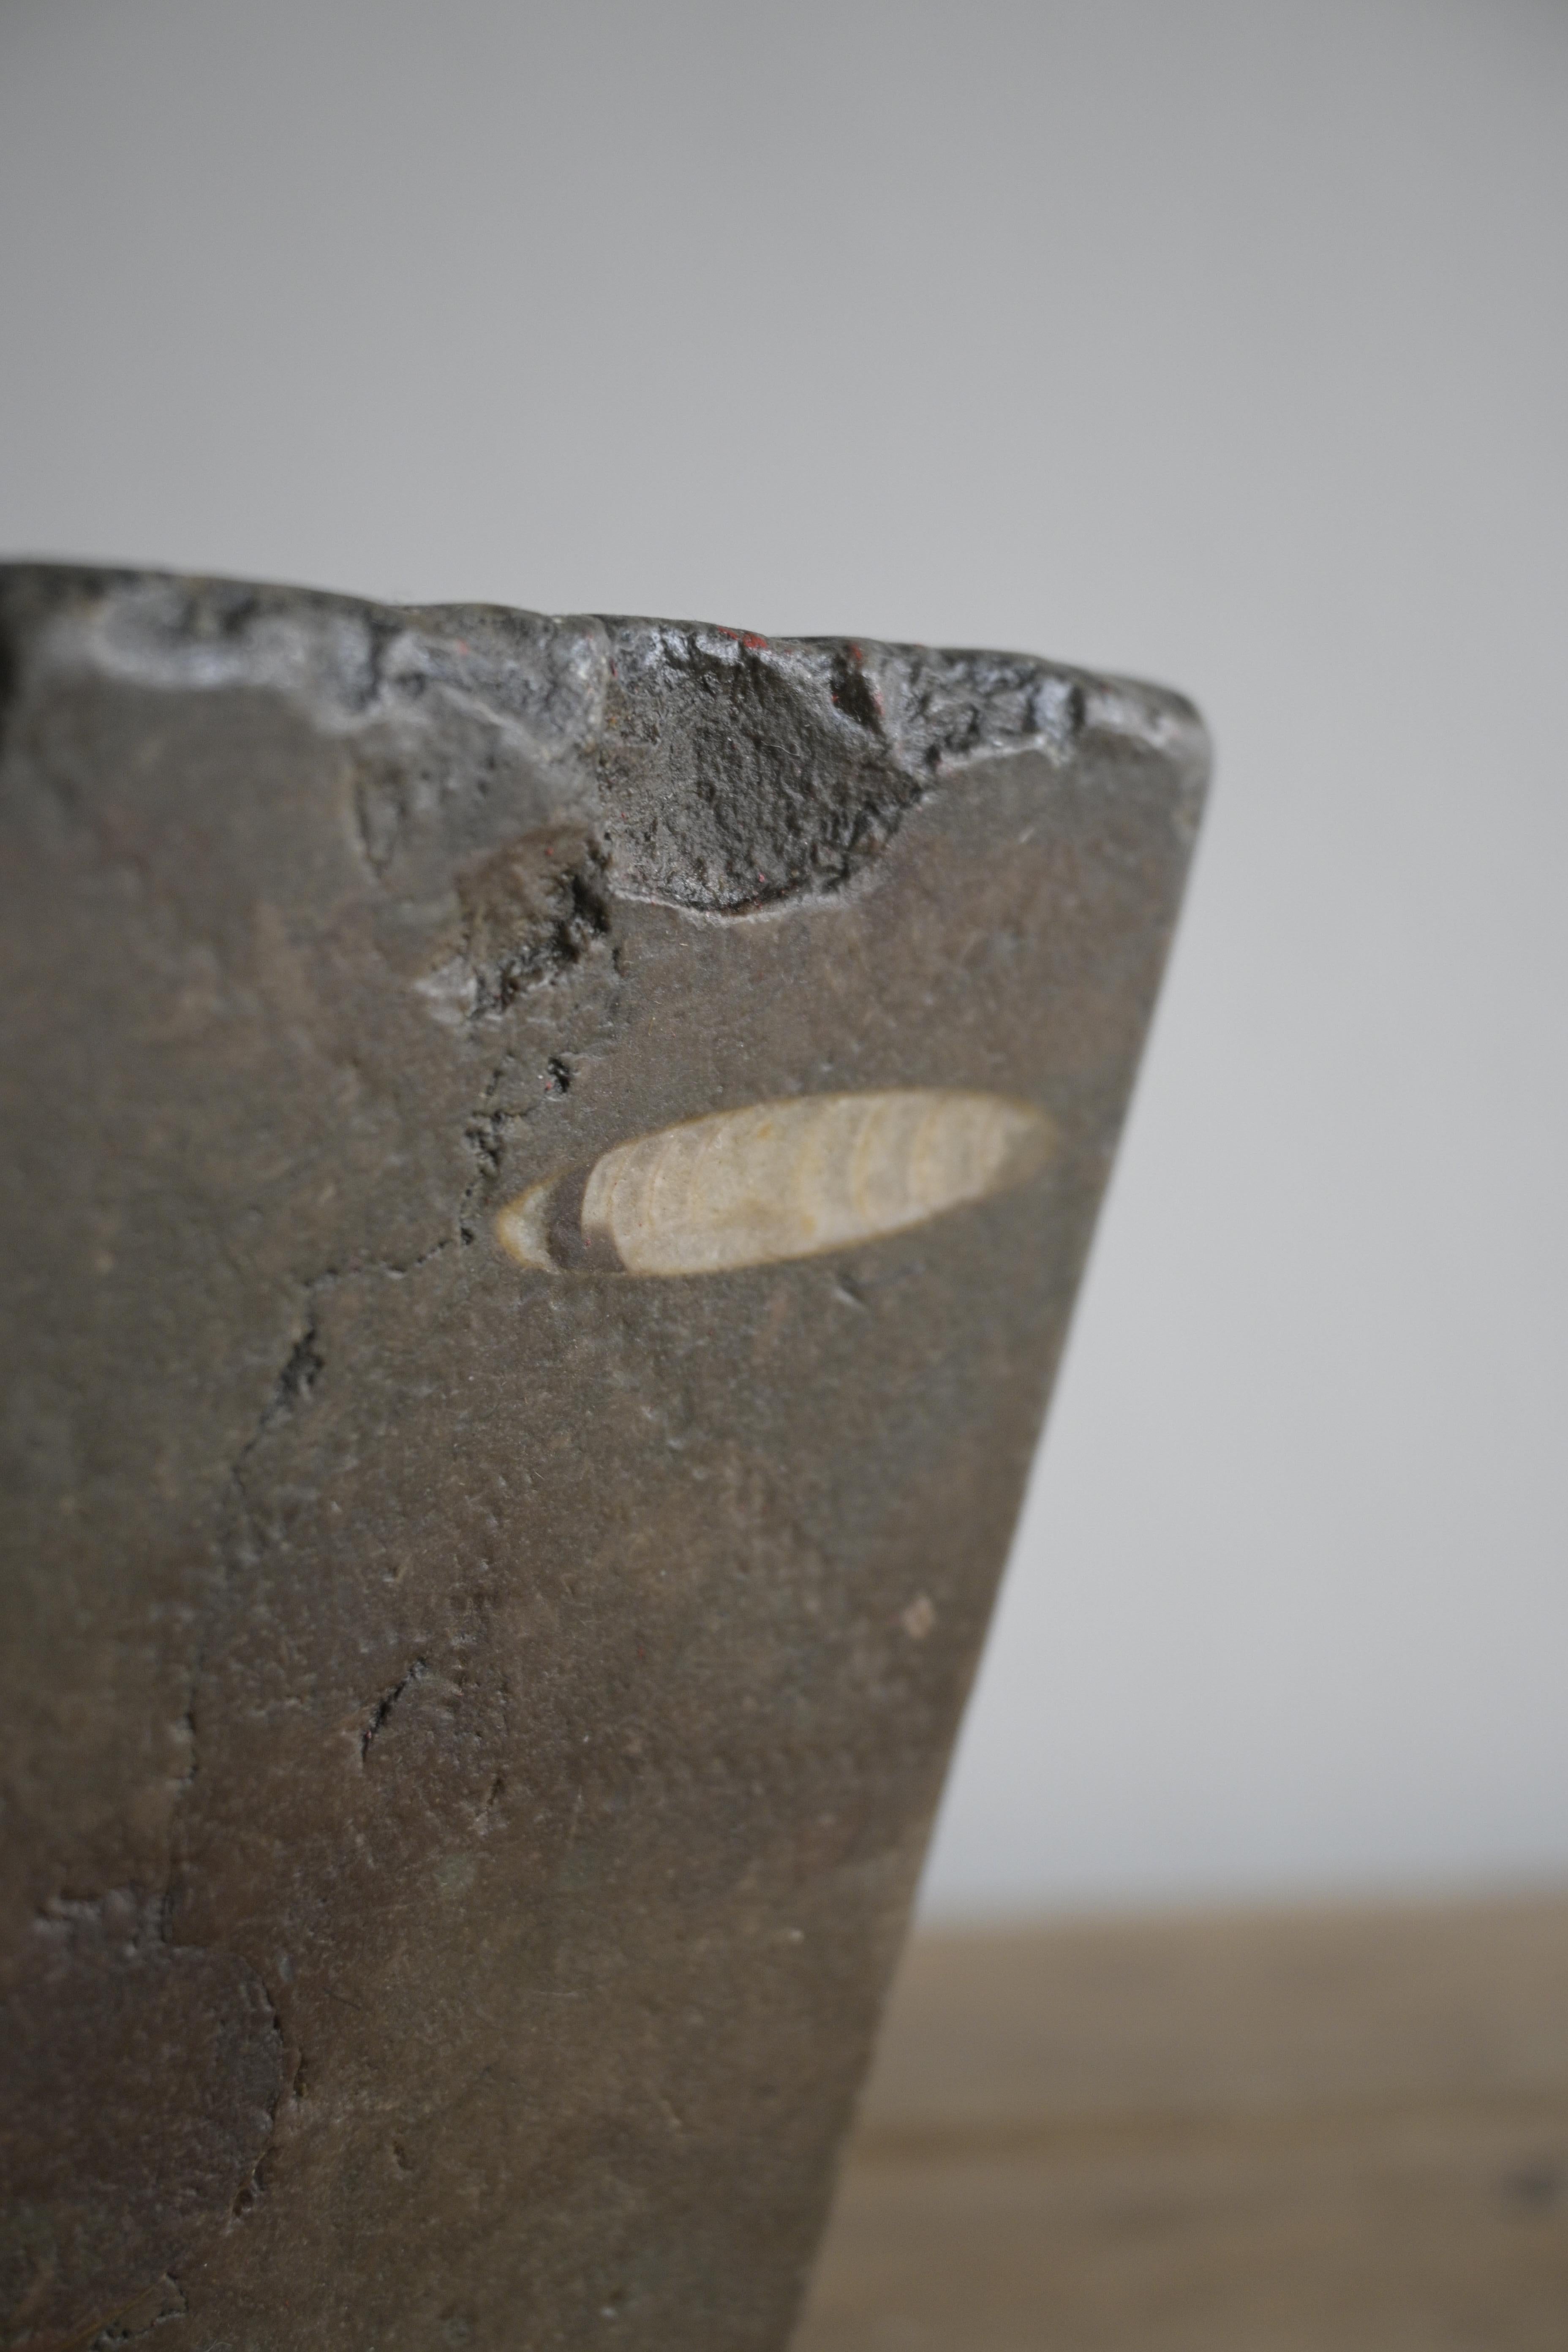 Dans les années 1800, de nombreux Suédois utilisaient des mortiers en pierre calcaire d'Öland.
Ils étaient connus pour leur durabilité et leur capacité à résister à l'usure du temps.

Belle patine et belle profondeur des couleurs.